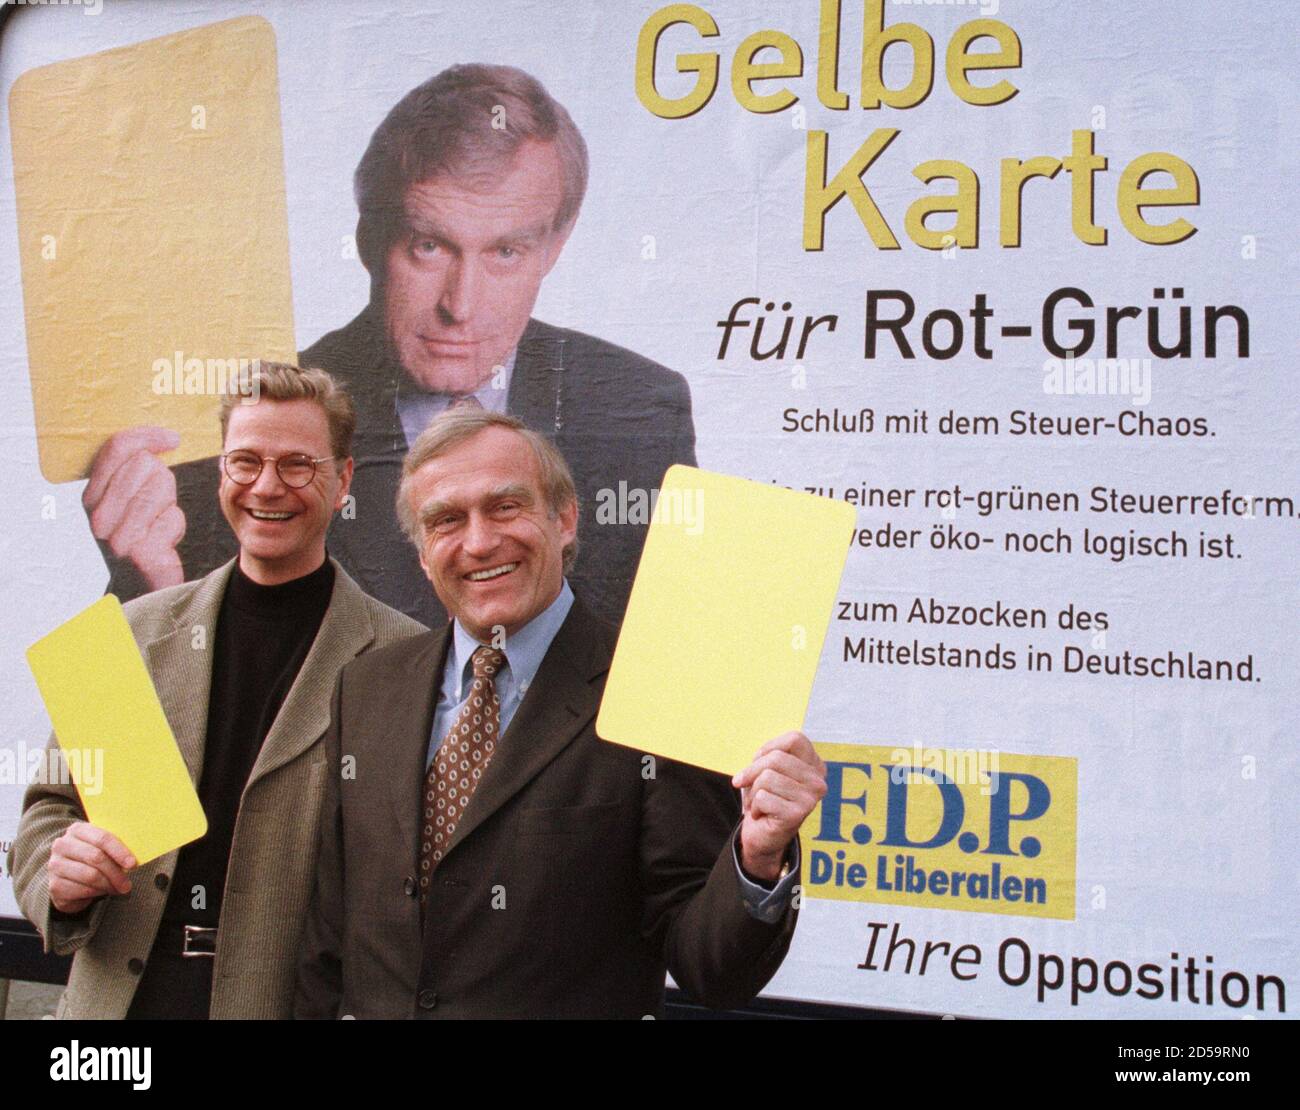 Der Generalsekretär der Freien Demokratischen Partei, Guido Westerwelle (L), und Helmut Haussmann (R), ein ehemaliger Bundeswirtschaftsminister, zeigen gelbe Karten, als sie im März 15 vor dem Bonner Parteihauptsitz ein Wahlplakat einführen. Haussmann ist der Spitzenkandidat der Partei für die Europawahl. Der Slogan lautet 'Gelbe Karte für die rot-grüne Koalition'. MUR/JRE Stockfoto